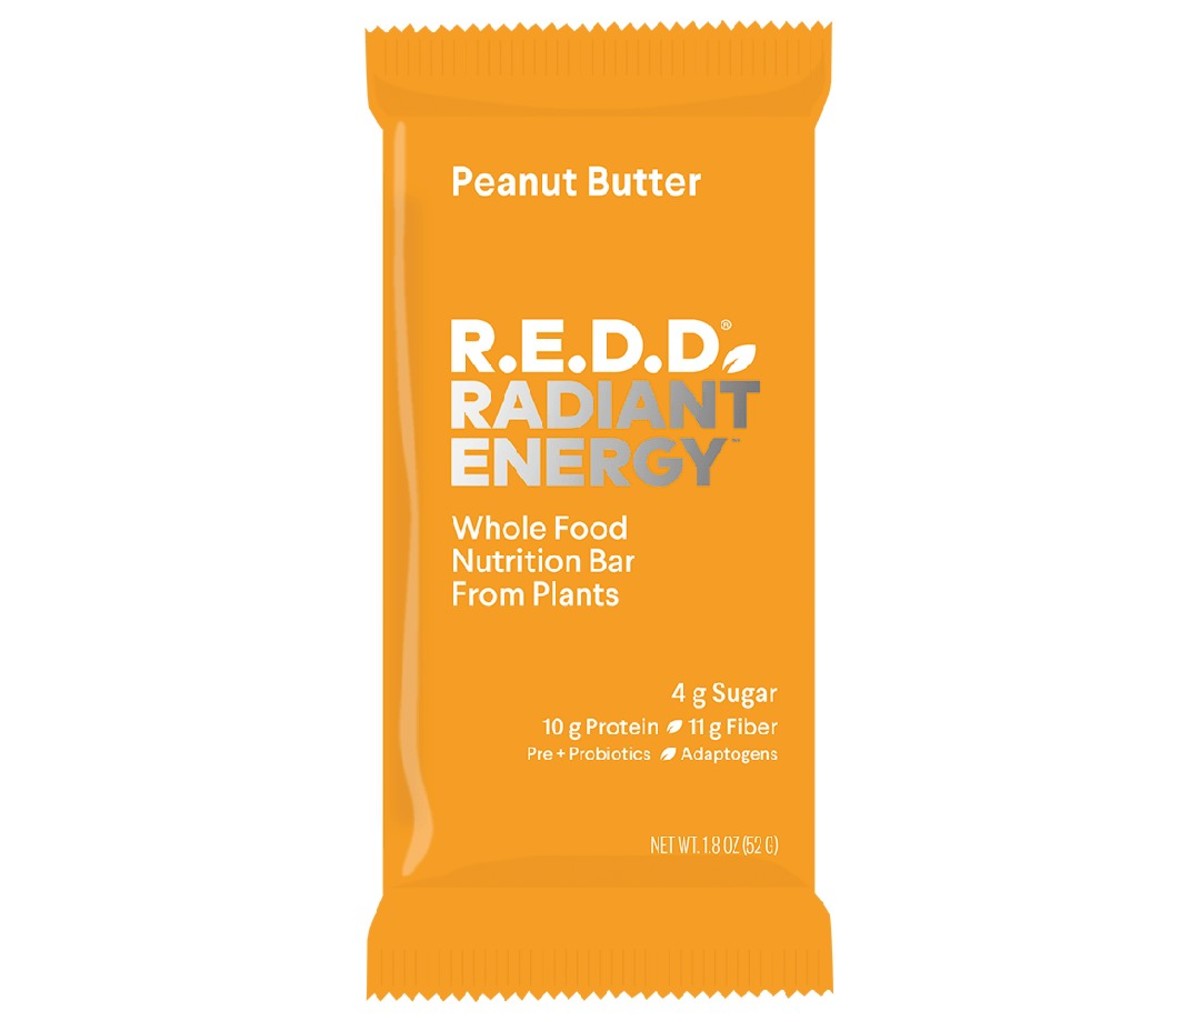 A single peanut butter R.E.D.D. Bar.